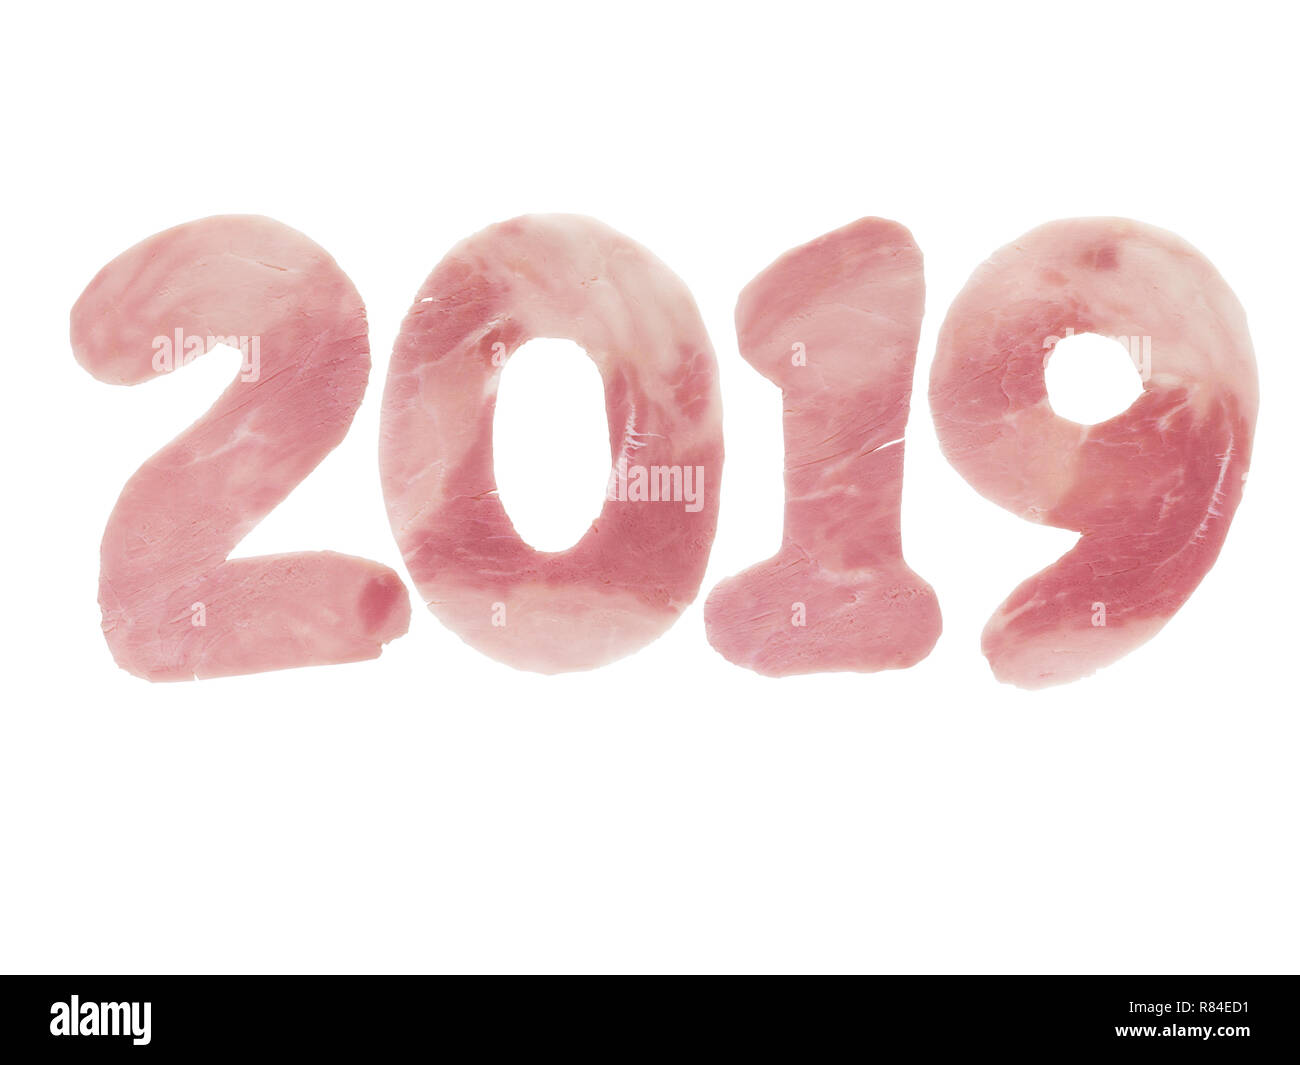 2019 le cifre dell'anno fatto del prosciutto di maiale come un simbolo del nuovo anno isolato su bianco. Animali oroscopo cinese. Foto Stock